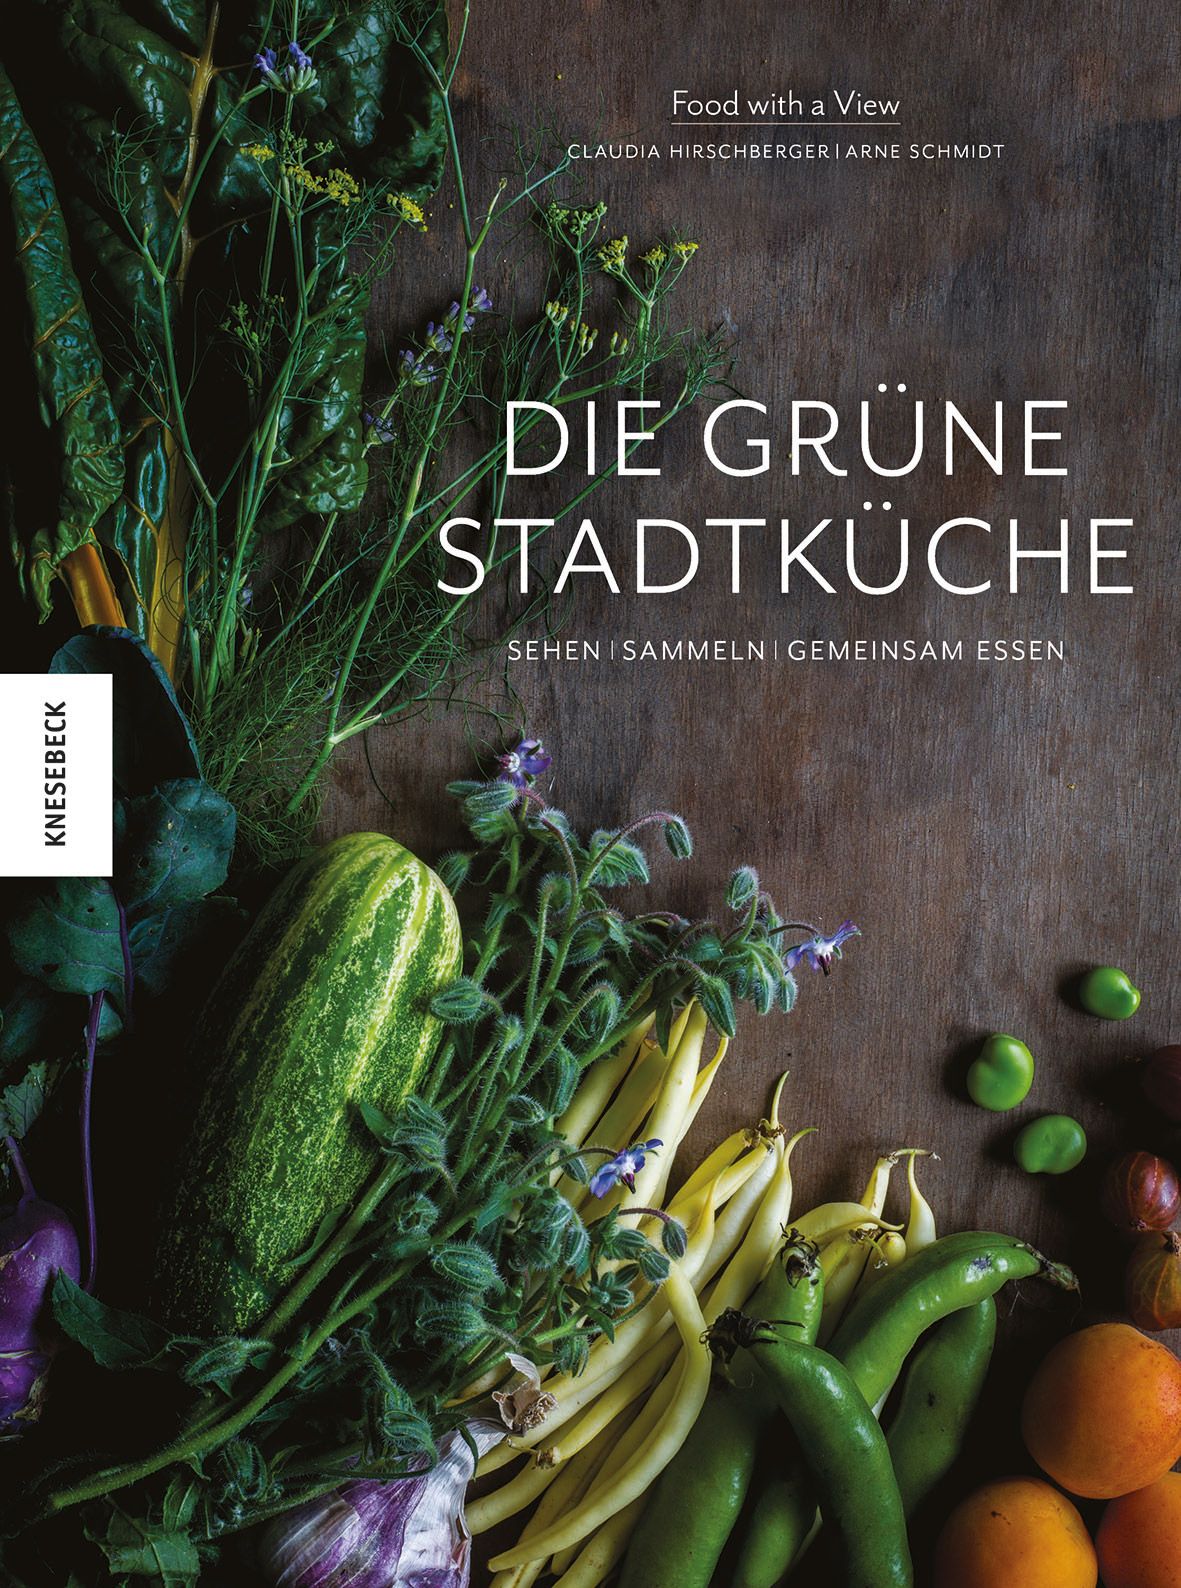 »Die grüne Stadtküche« Sehen, sammeln, gemeinsam essen, Das Cover des Buches von Claudia Hirschberger, Arne Schmidt Food with a view, Knesebeck Verlag 2017